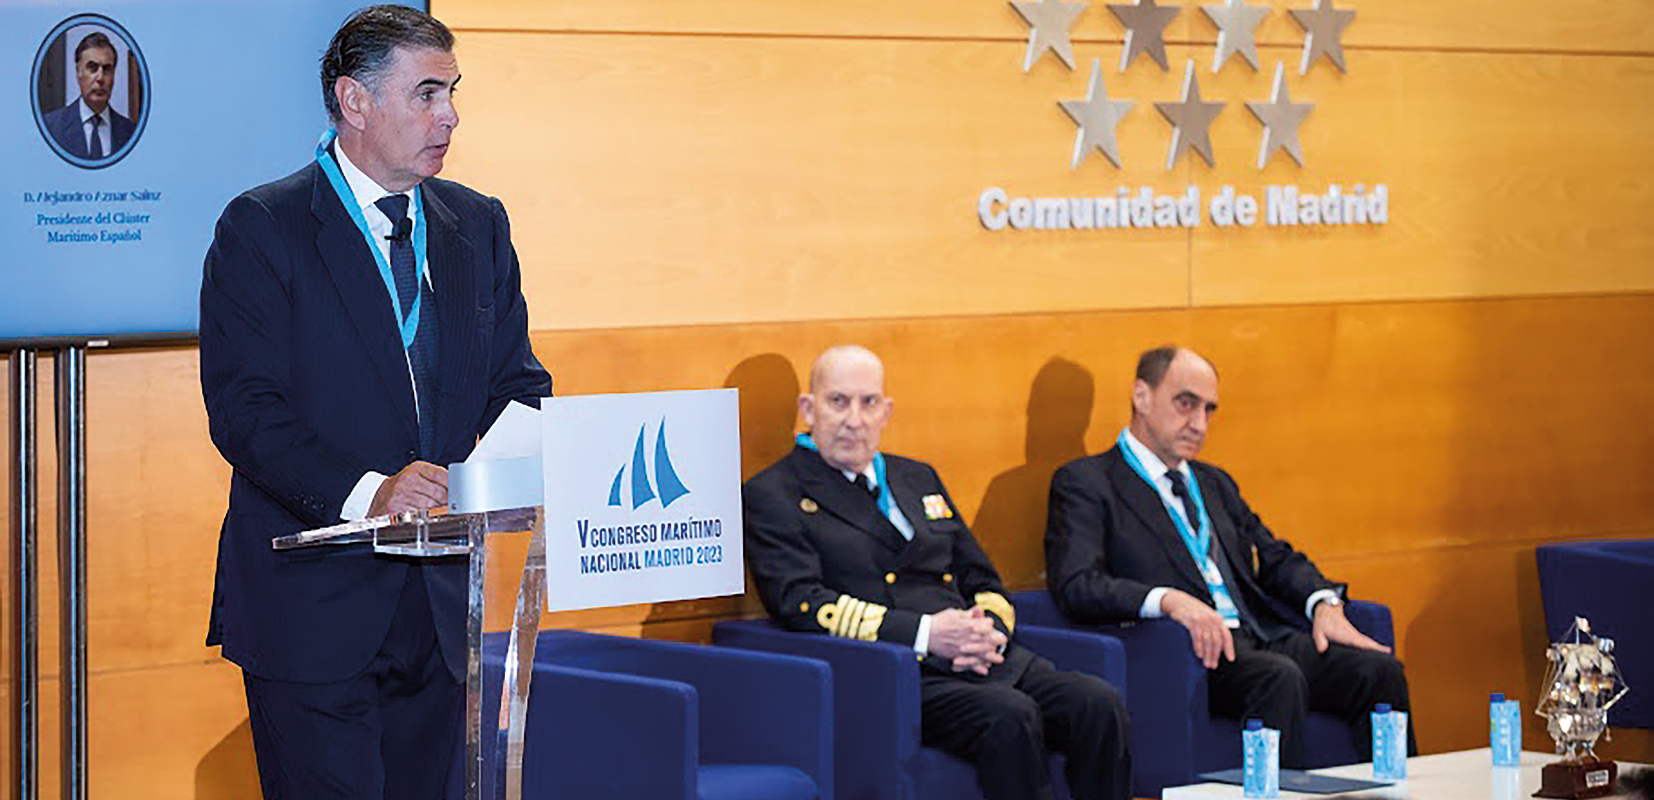 Inauguración del Congreso Marítimo por Alejandro Aznar, presidente del Clúster